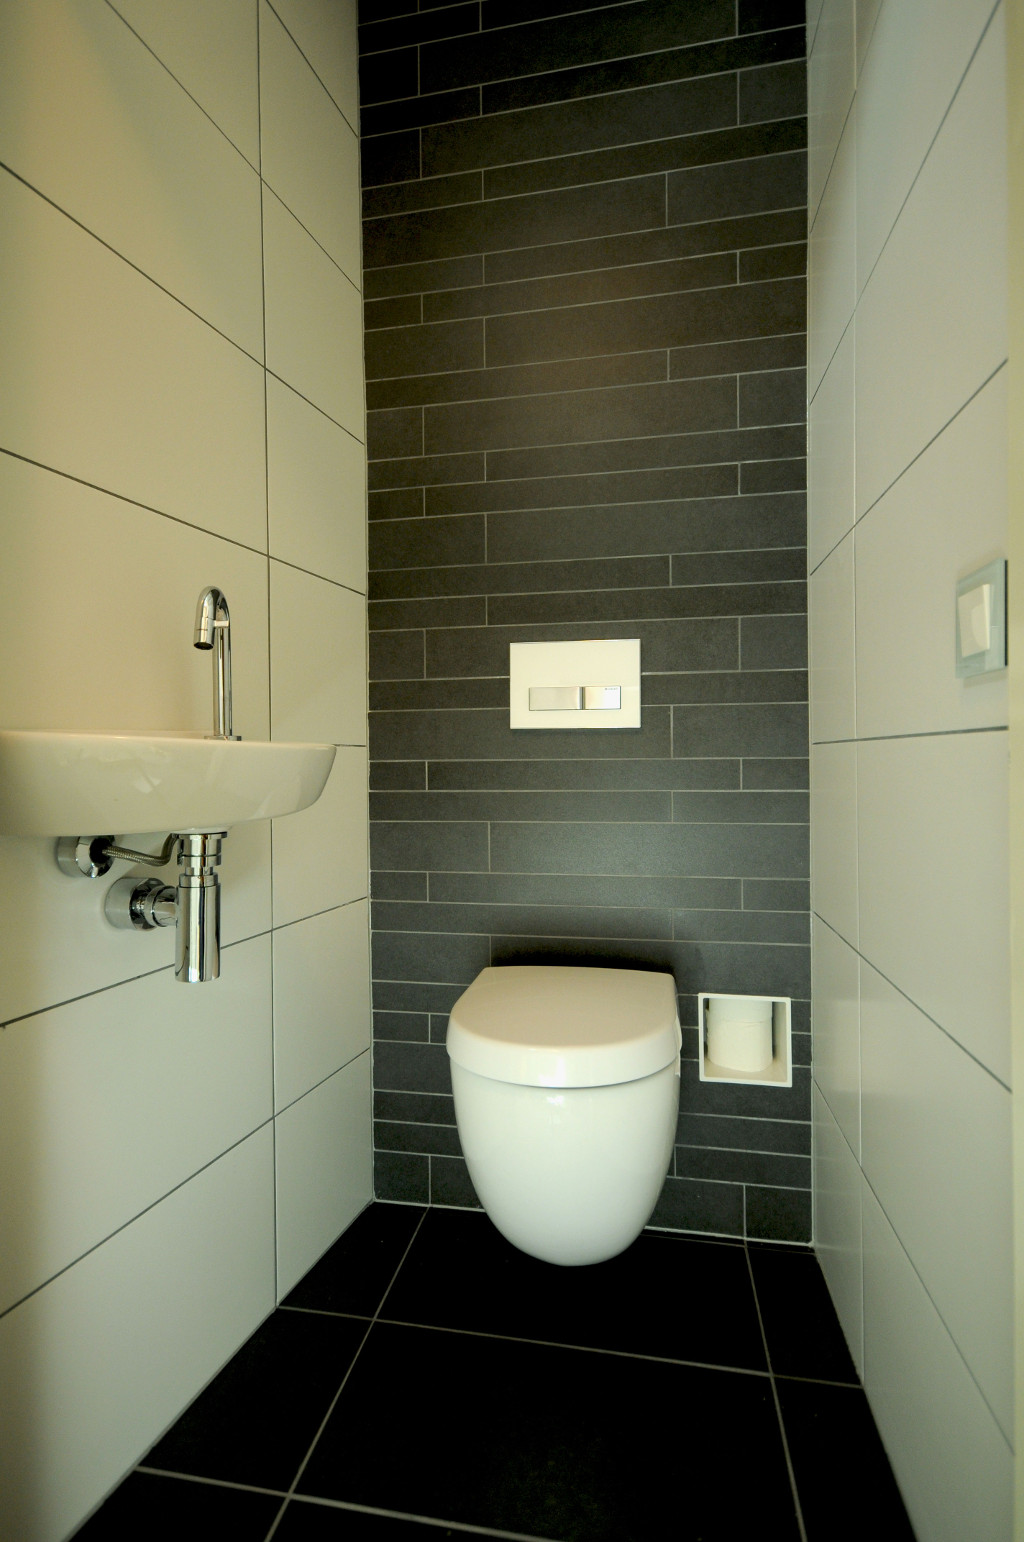 Stock4Rolls is een inbouw-toiletroldispenser, een uniek product voor de toiletruimte, dat in februari 2010 op de Nederlandse markt is geïntroduceerd.